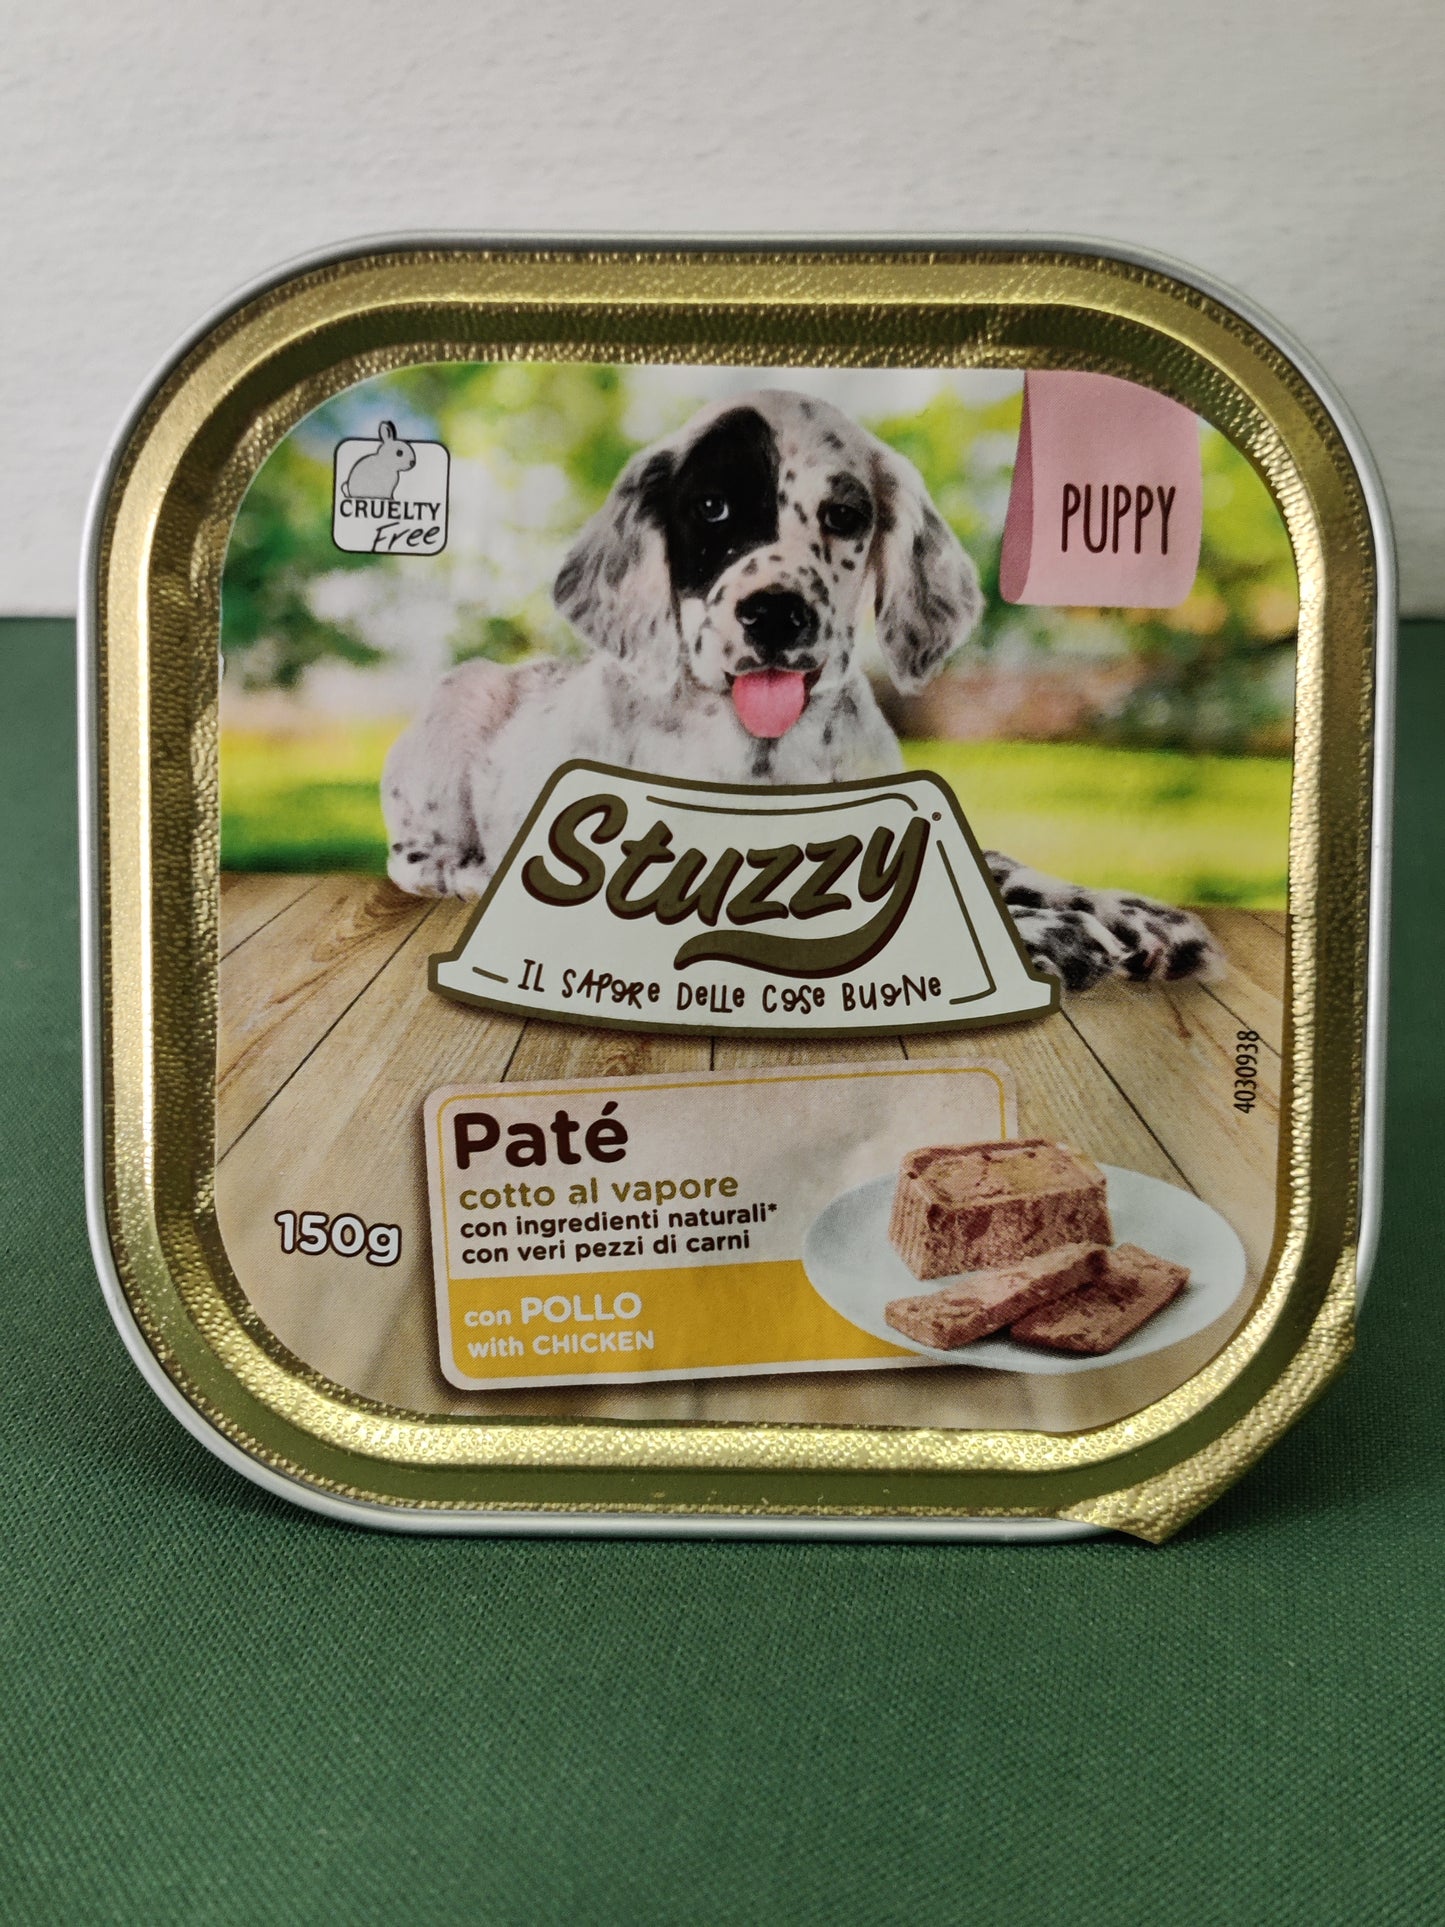 Stuzzy - Patè 150g